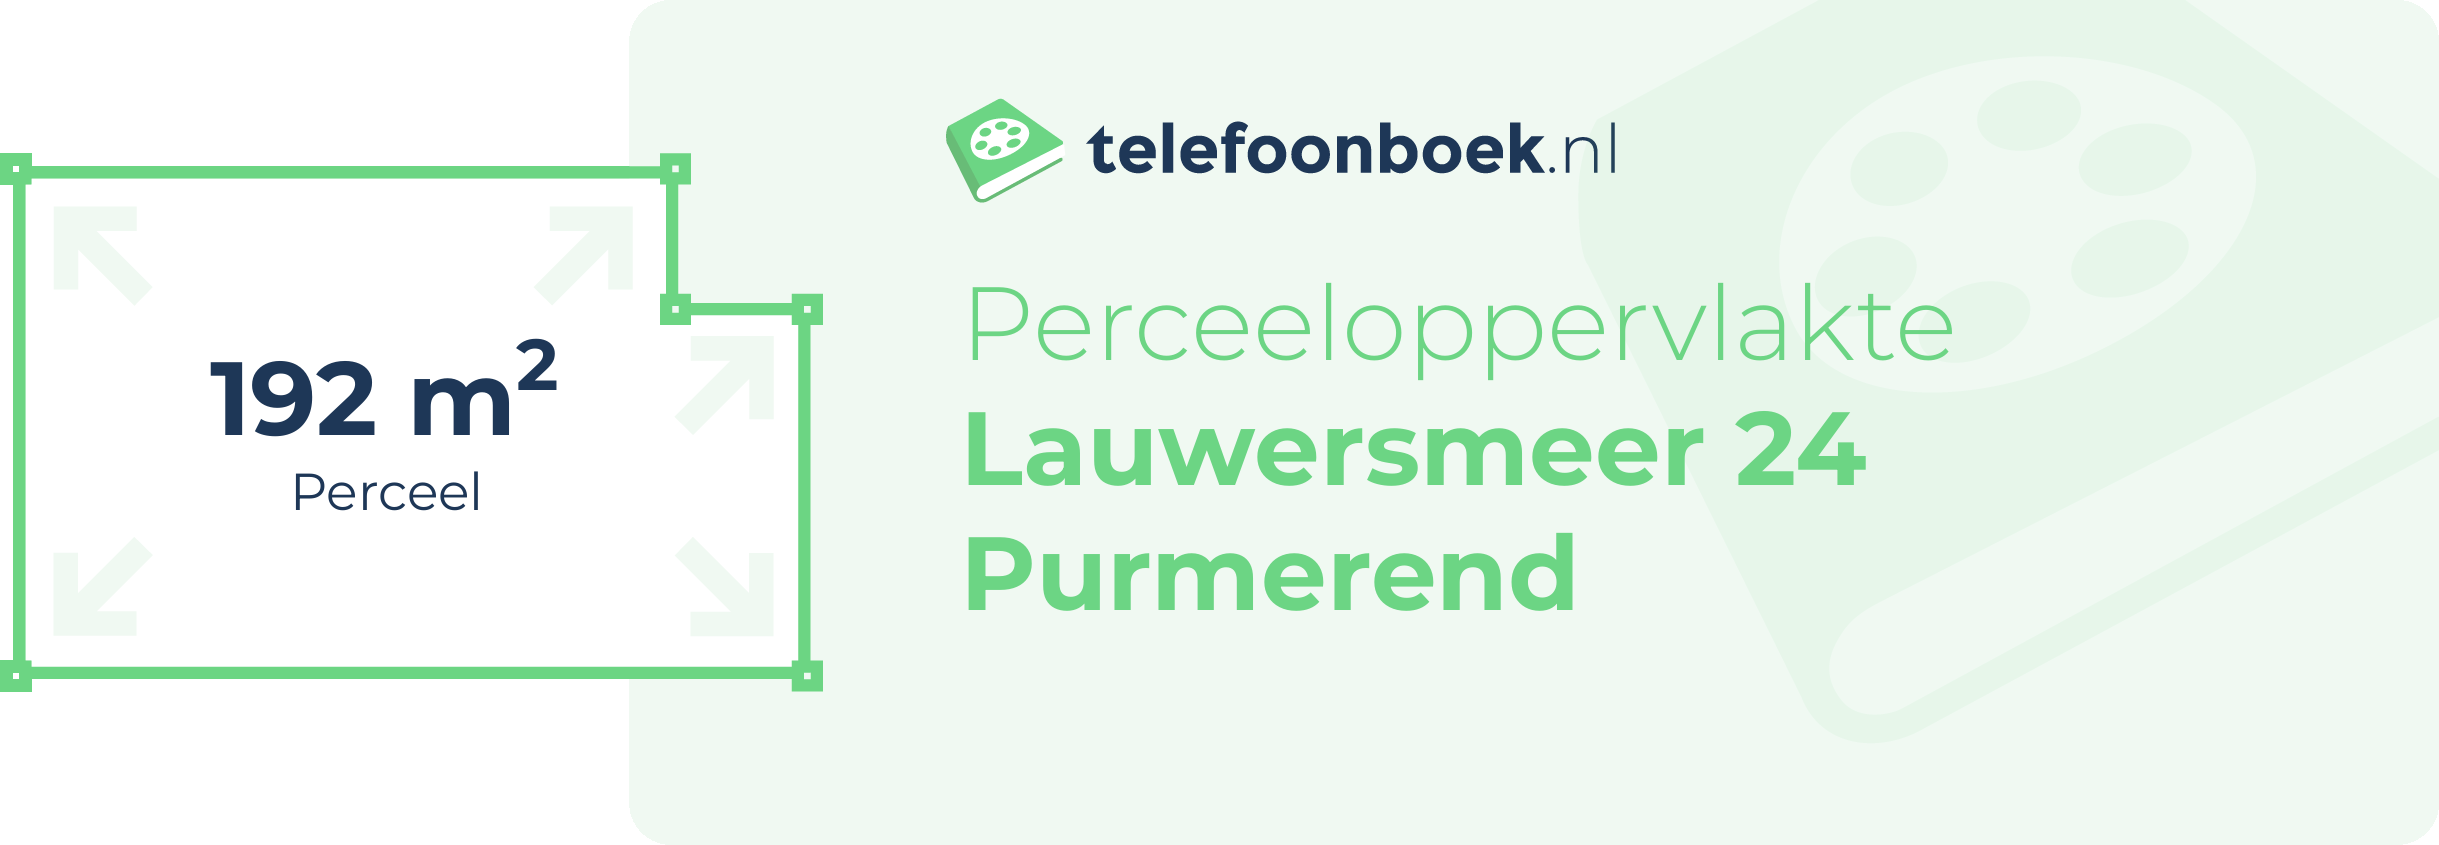 Perceeloppervlakte Lauwersmeer 24 Purmerend